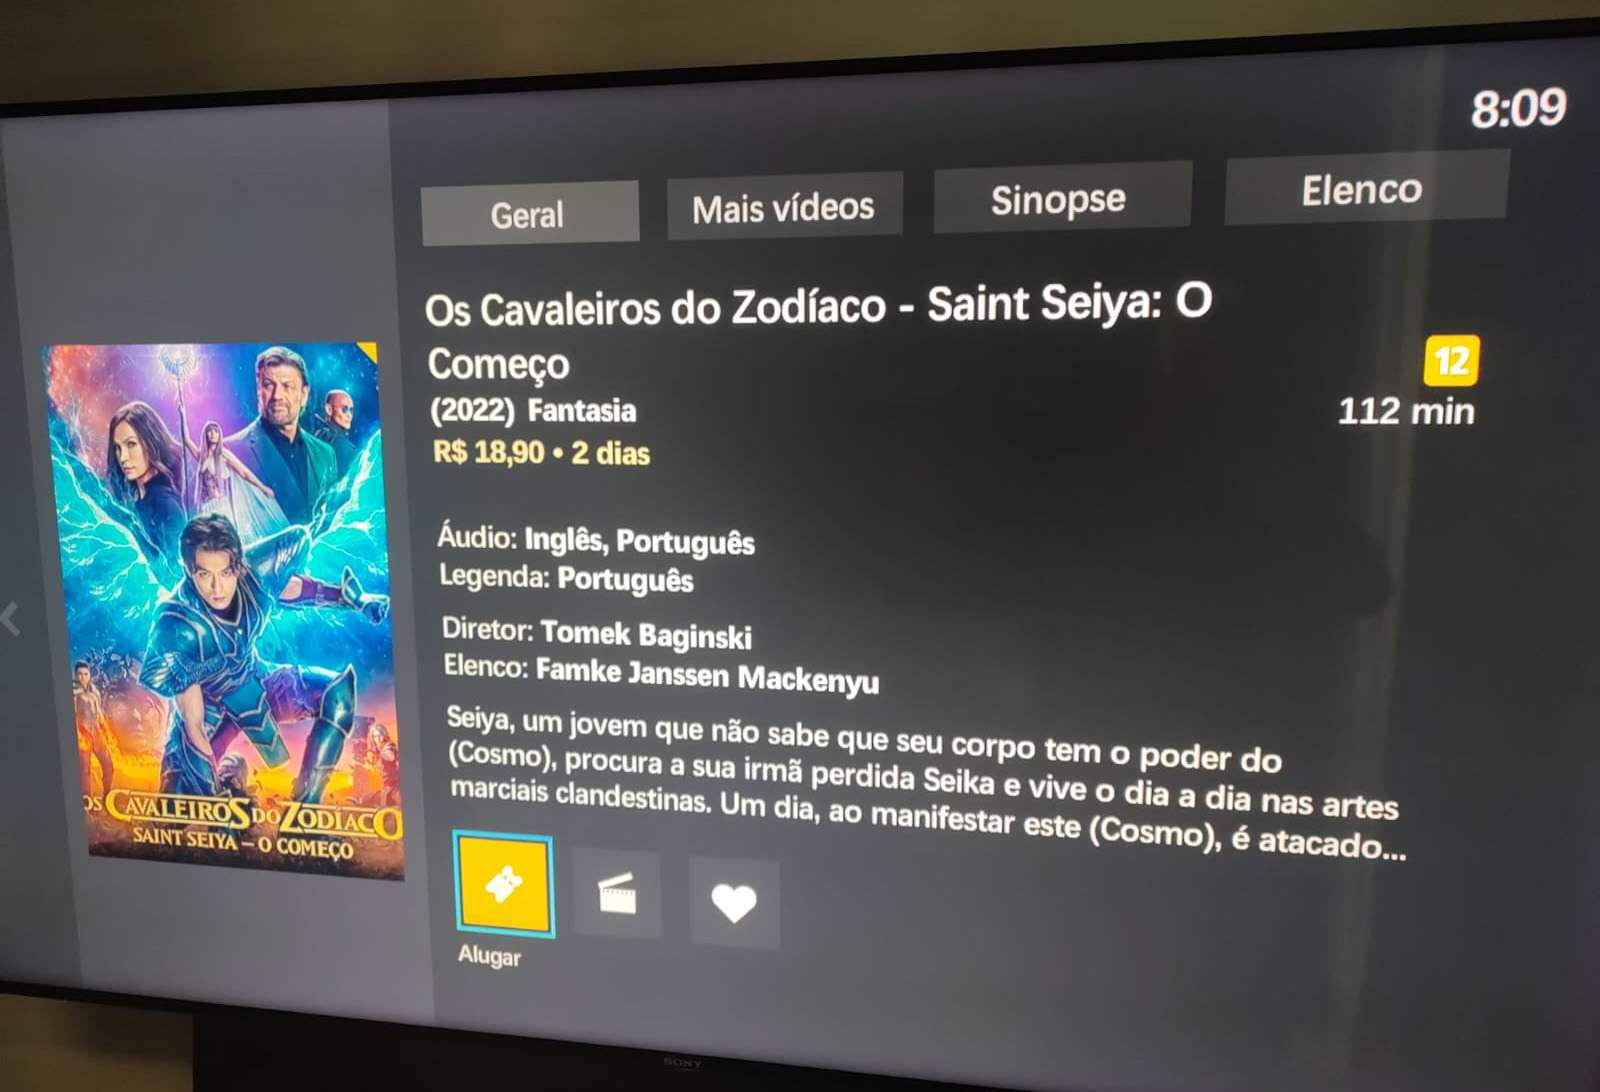 Live Action: trailer dublado em português do filme Os Cavaleiros do Zodíaco  - Saint Seiya: O começo! - Os Cavaleiros do Zodíaco - CavZodiaco.com.br